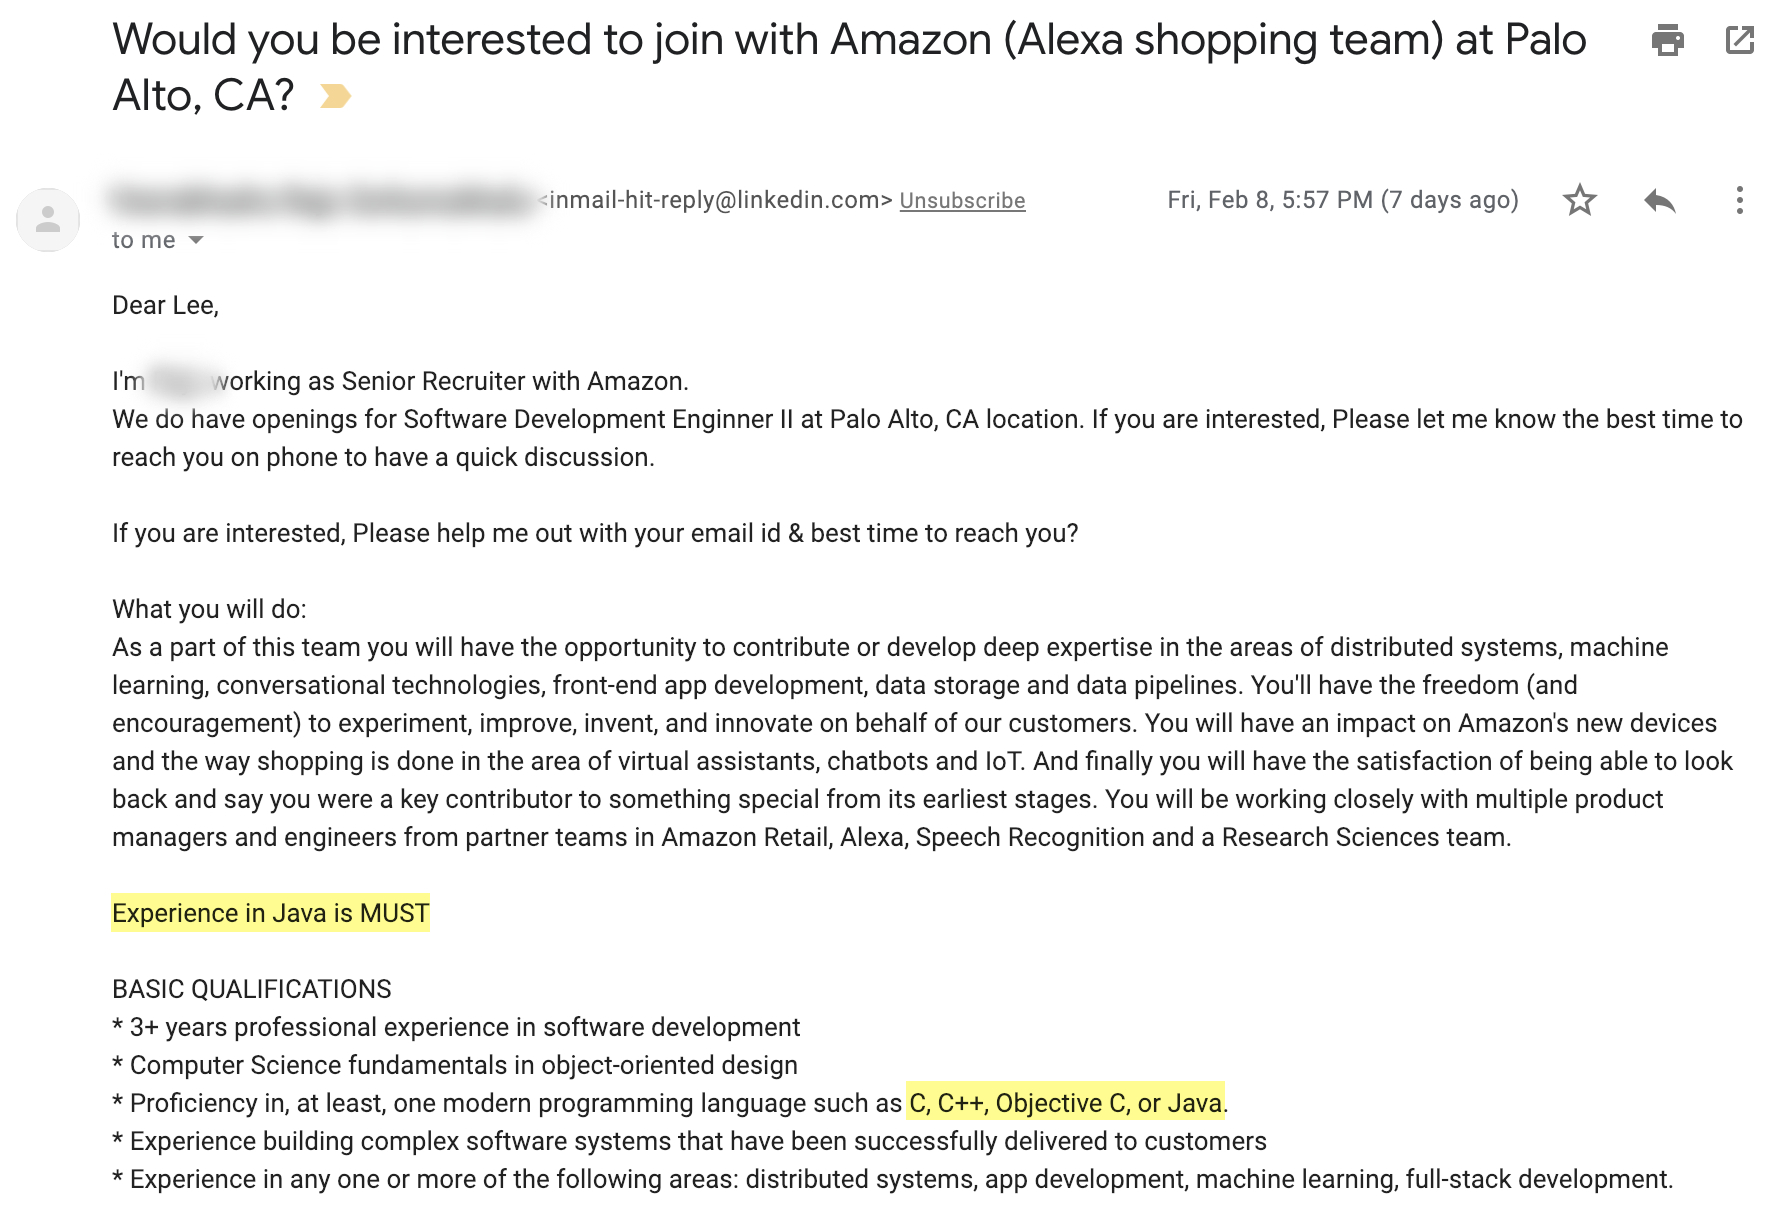 Amazon Recruiter